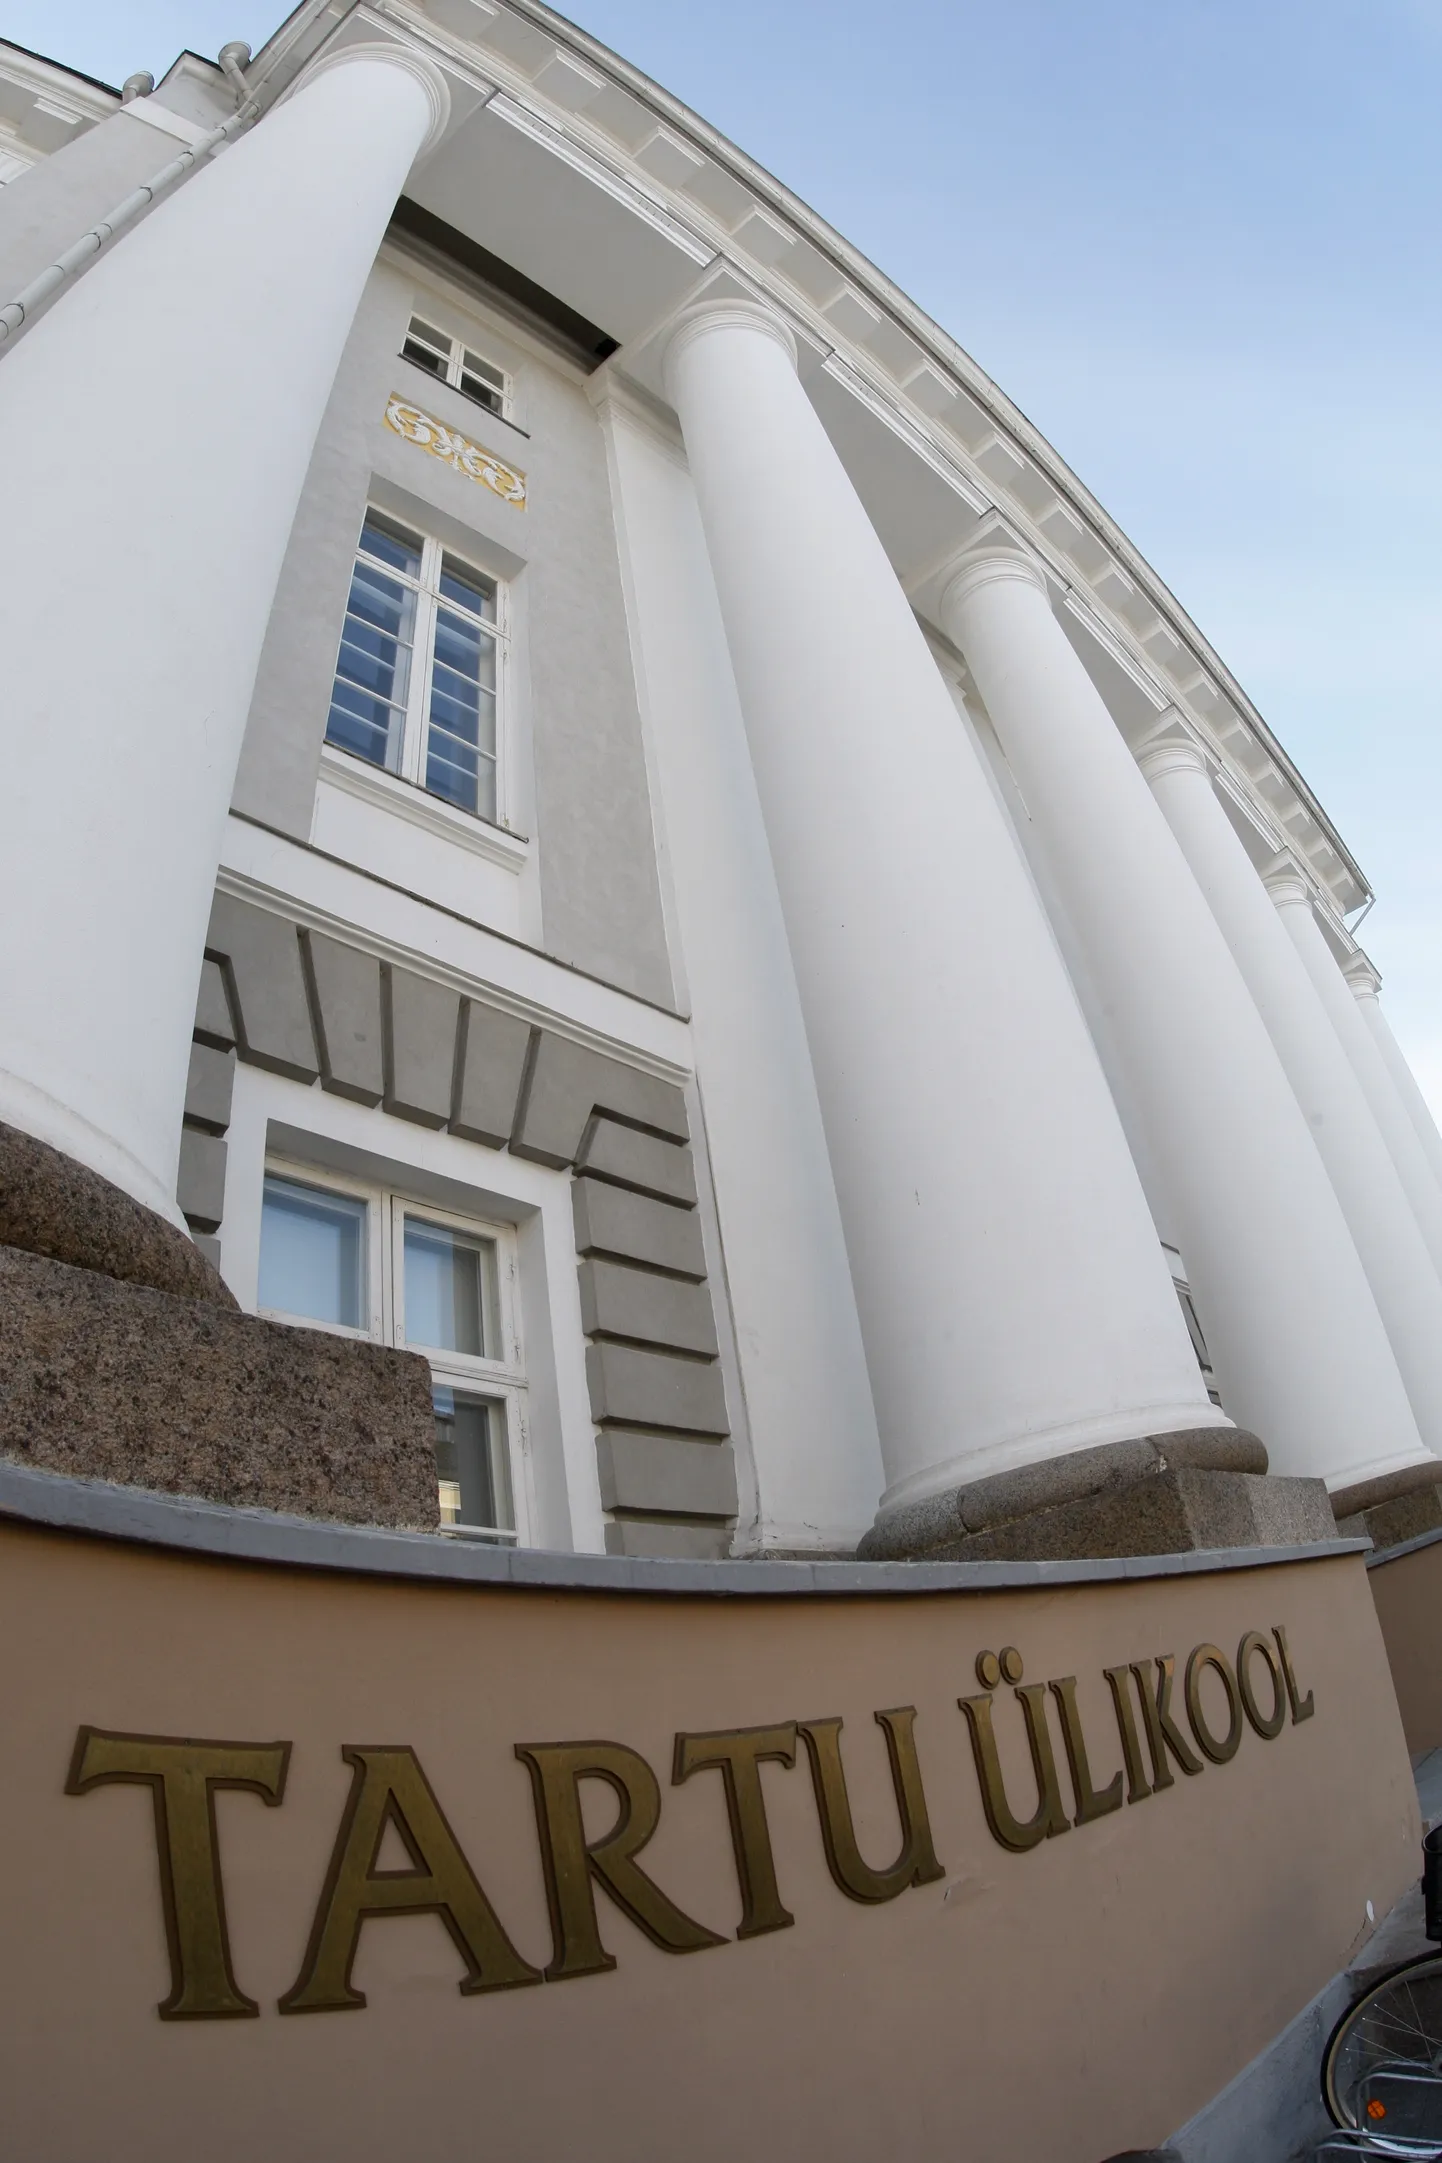 Stipendiumit saavad taotleda Tartu ülikooli bakalaureuseõpe tudengid.